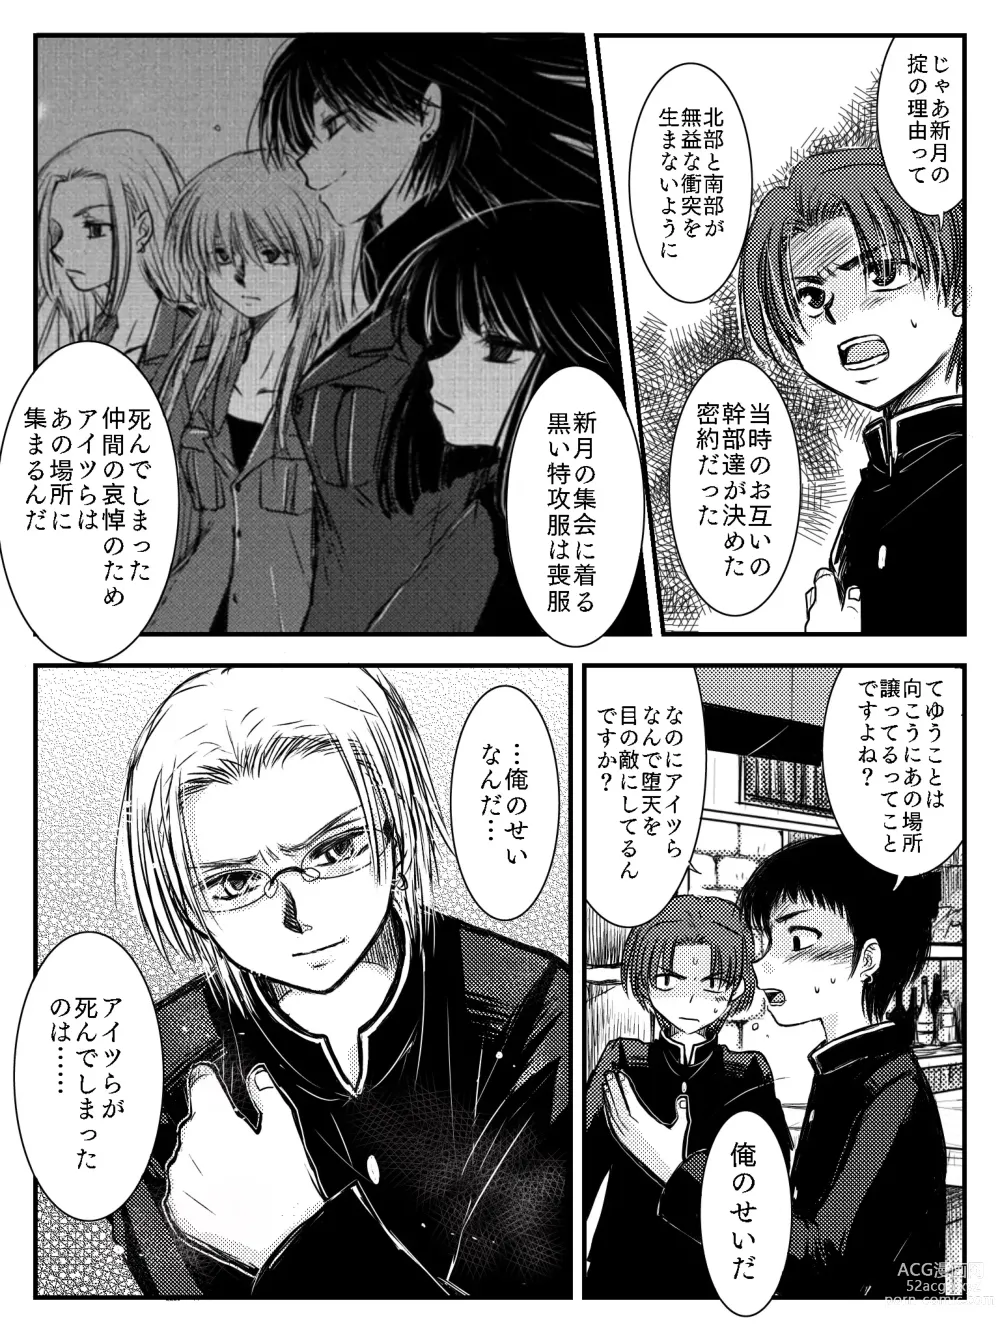 Page 17 of doujinshi LADIES NAVIGATION Episode 4